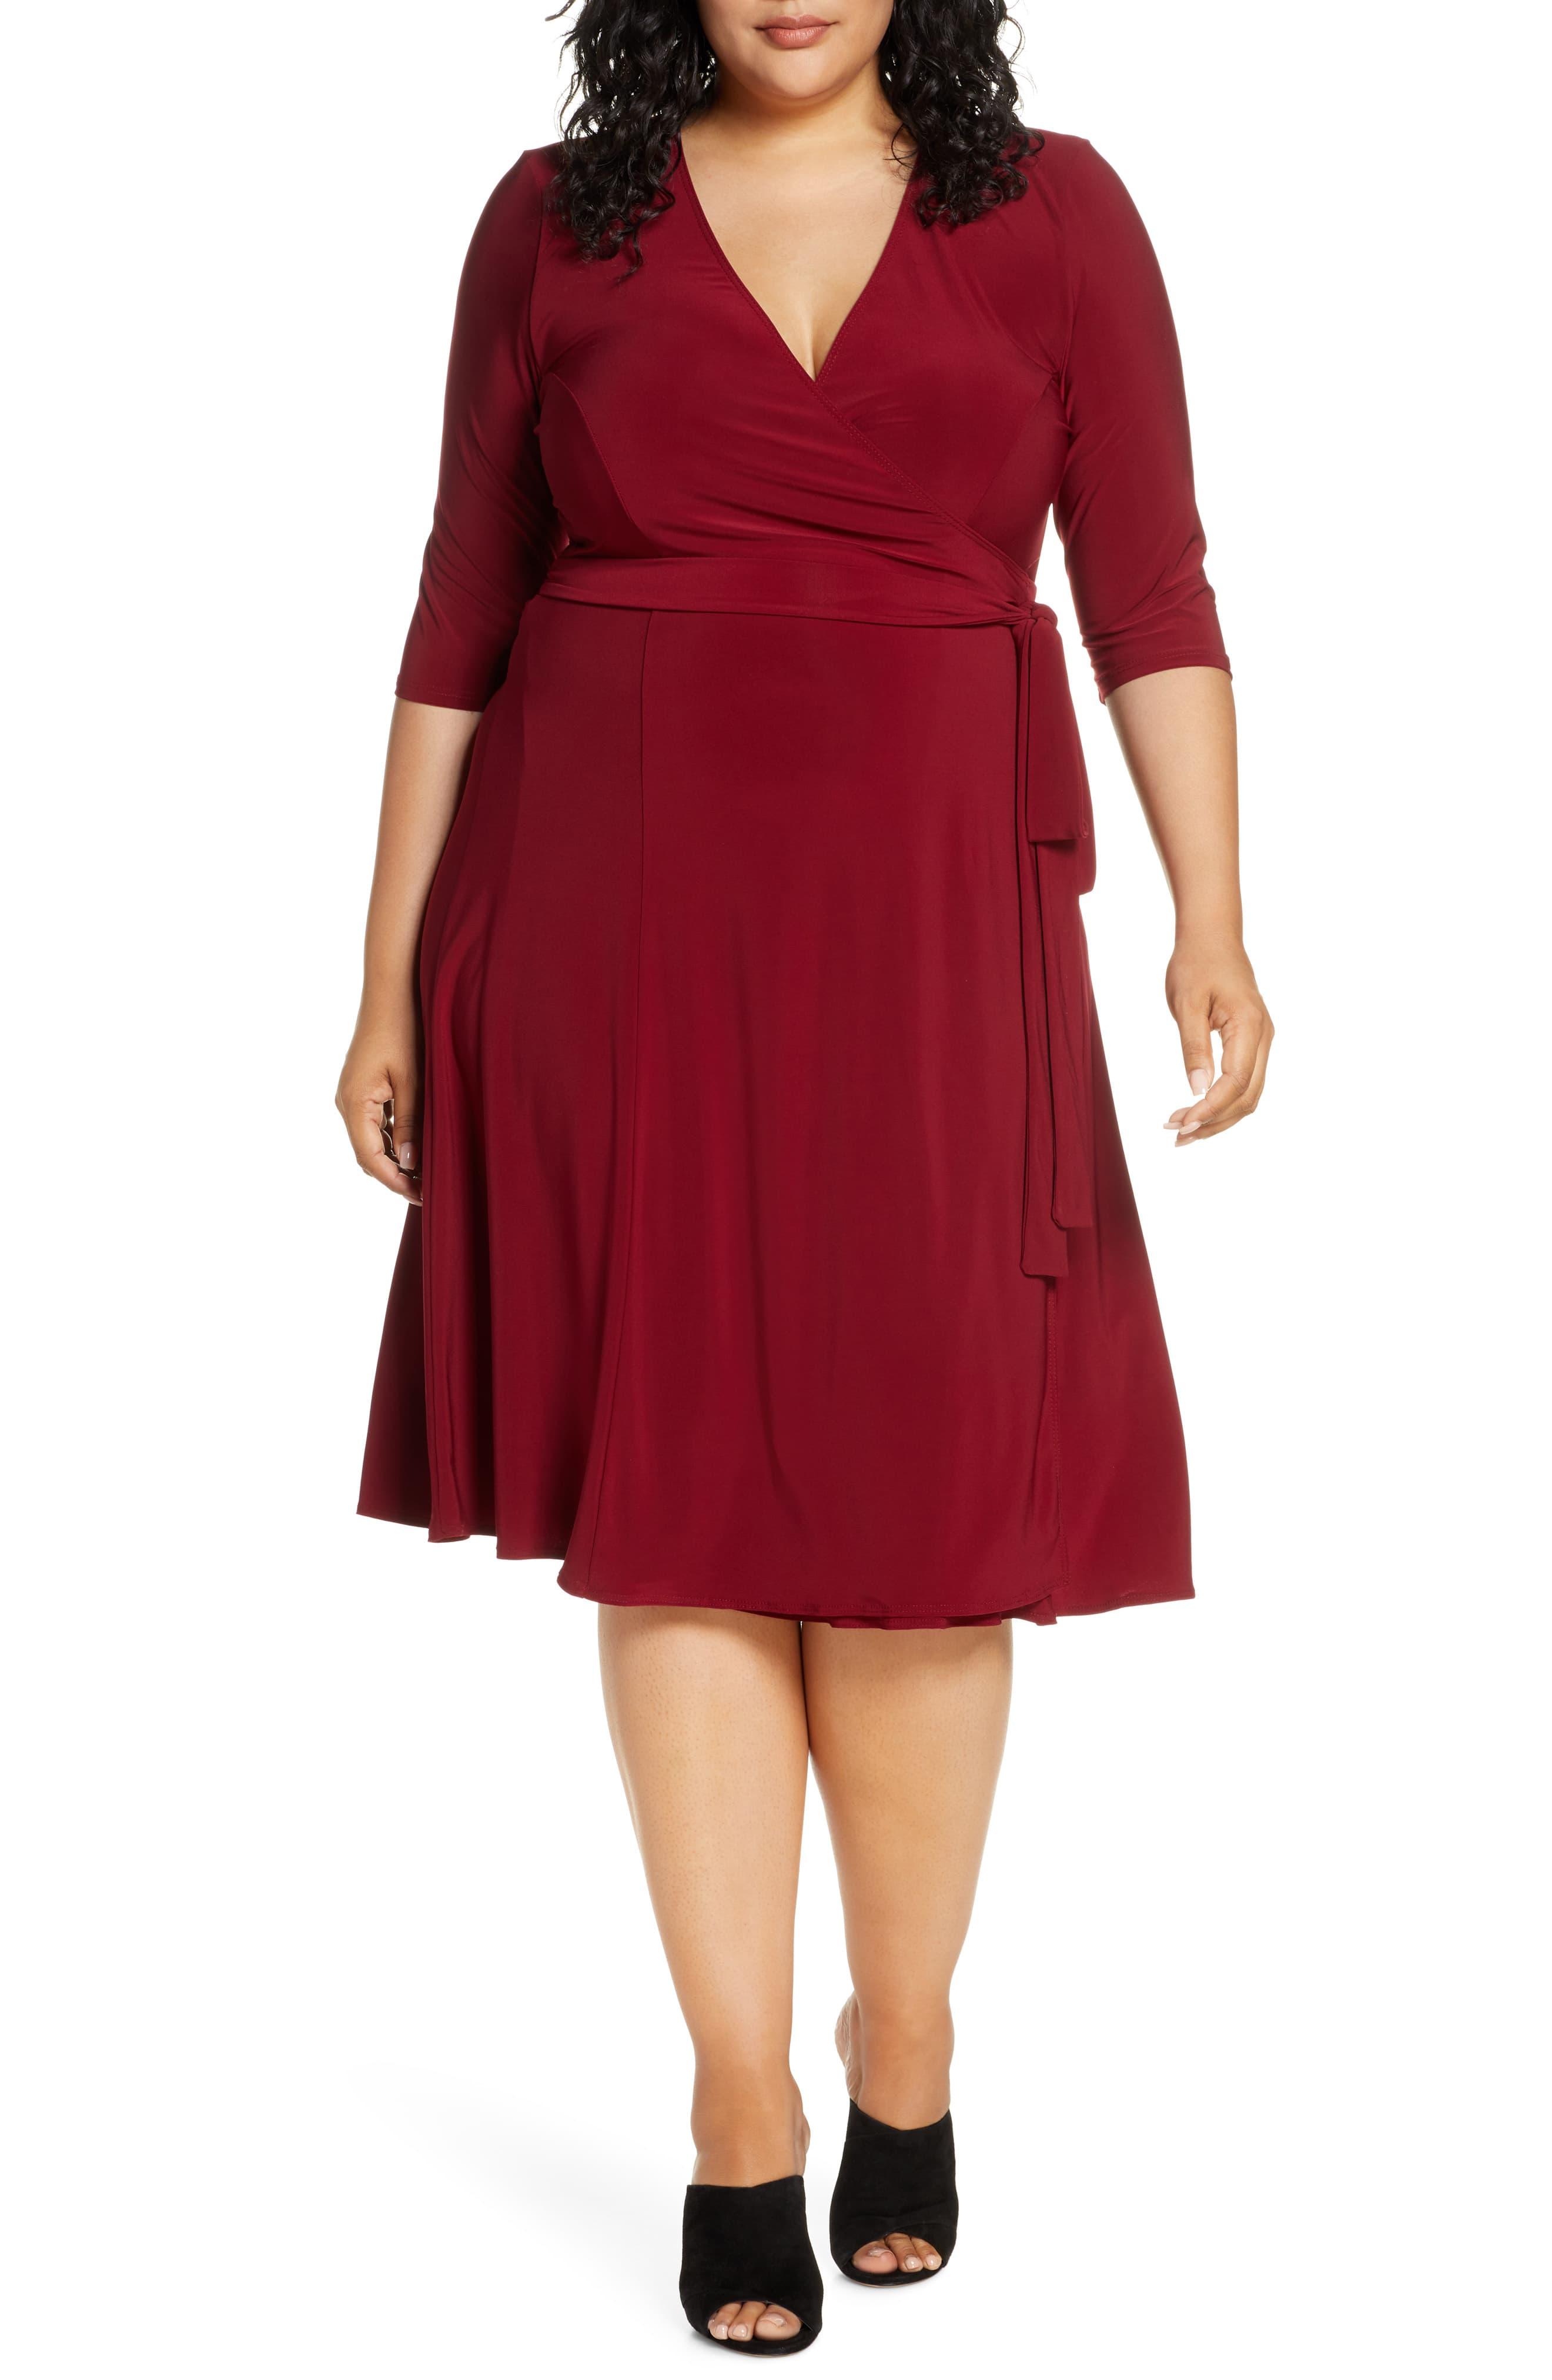 Kiyonna Essential Wrap Dress in Burgundy (Red) - Lyst